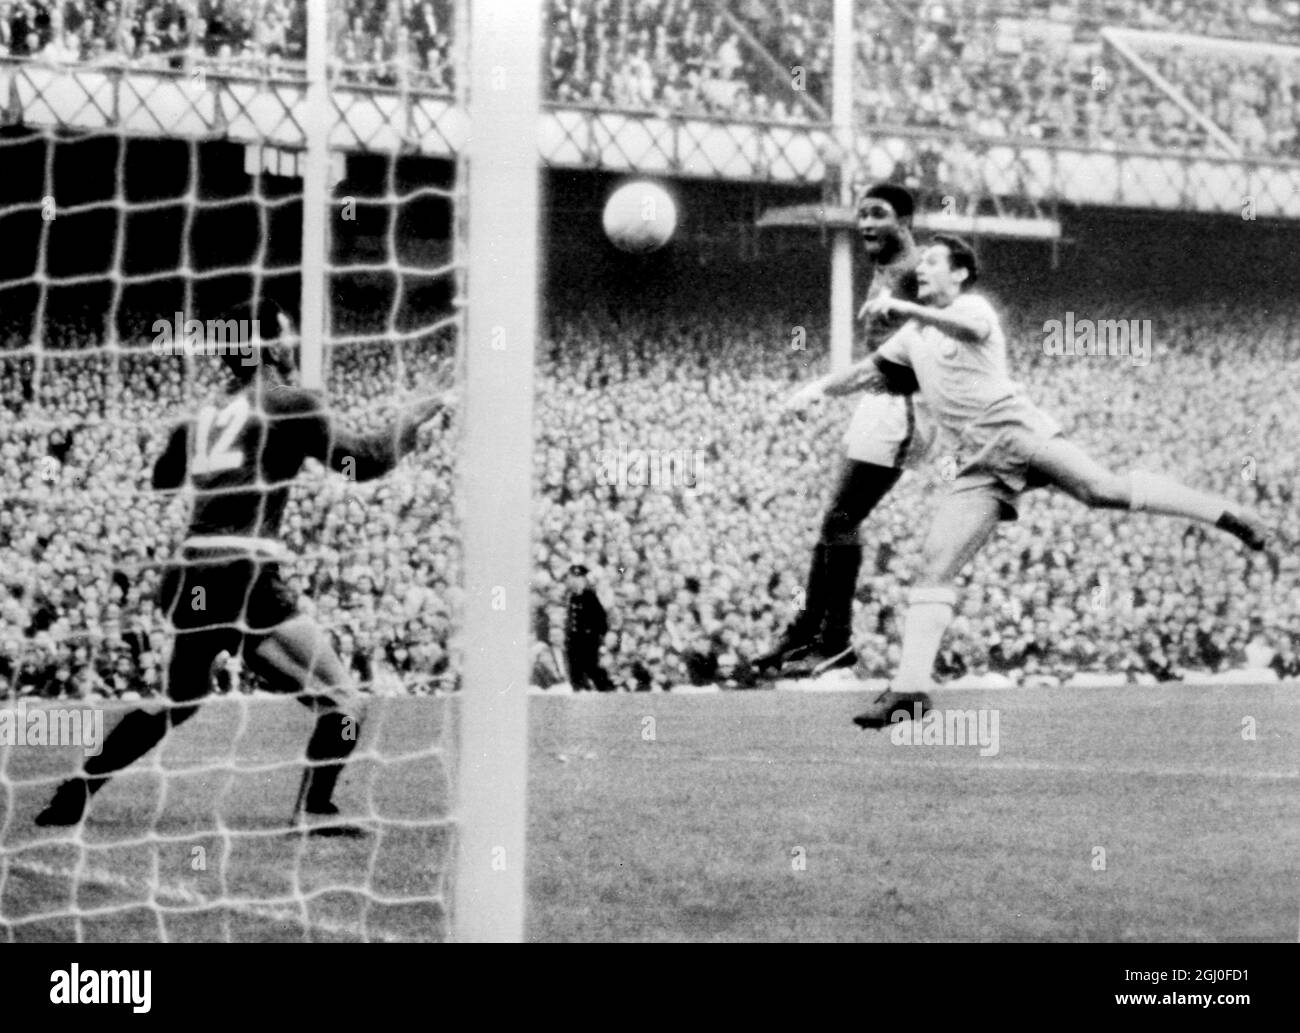 1966 Coppa del mondo Portogallo / Brasile Eusebio segna il secondo gol del Portogallo con la testa durante la partita di Coppa del mondo contro il Brasile al Goodison Park. I giocatori brasiliani sono Orlando e il portiere Manga (No.12). 19 luglio 1966. Foto Stock